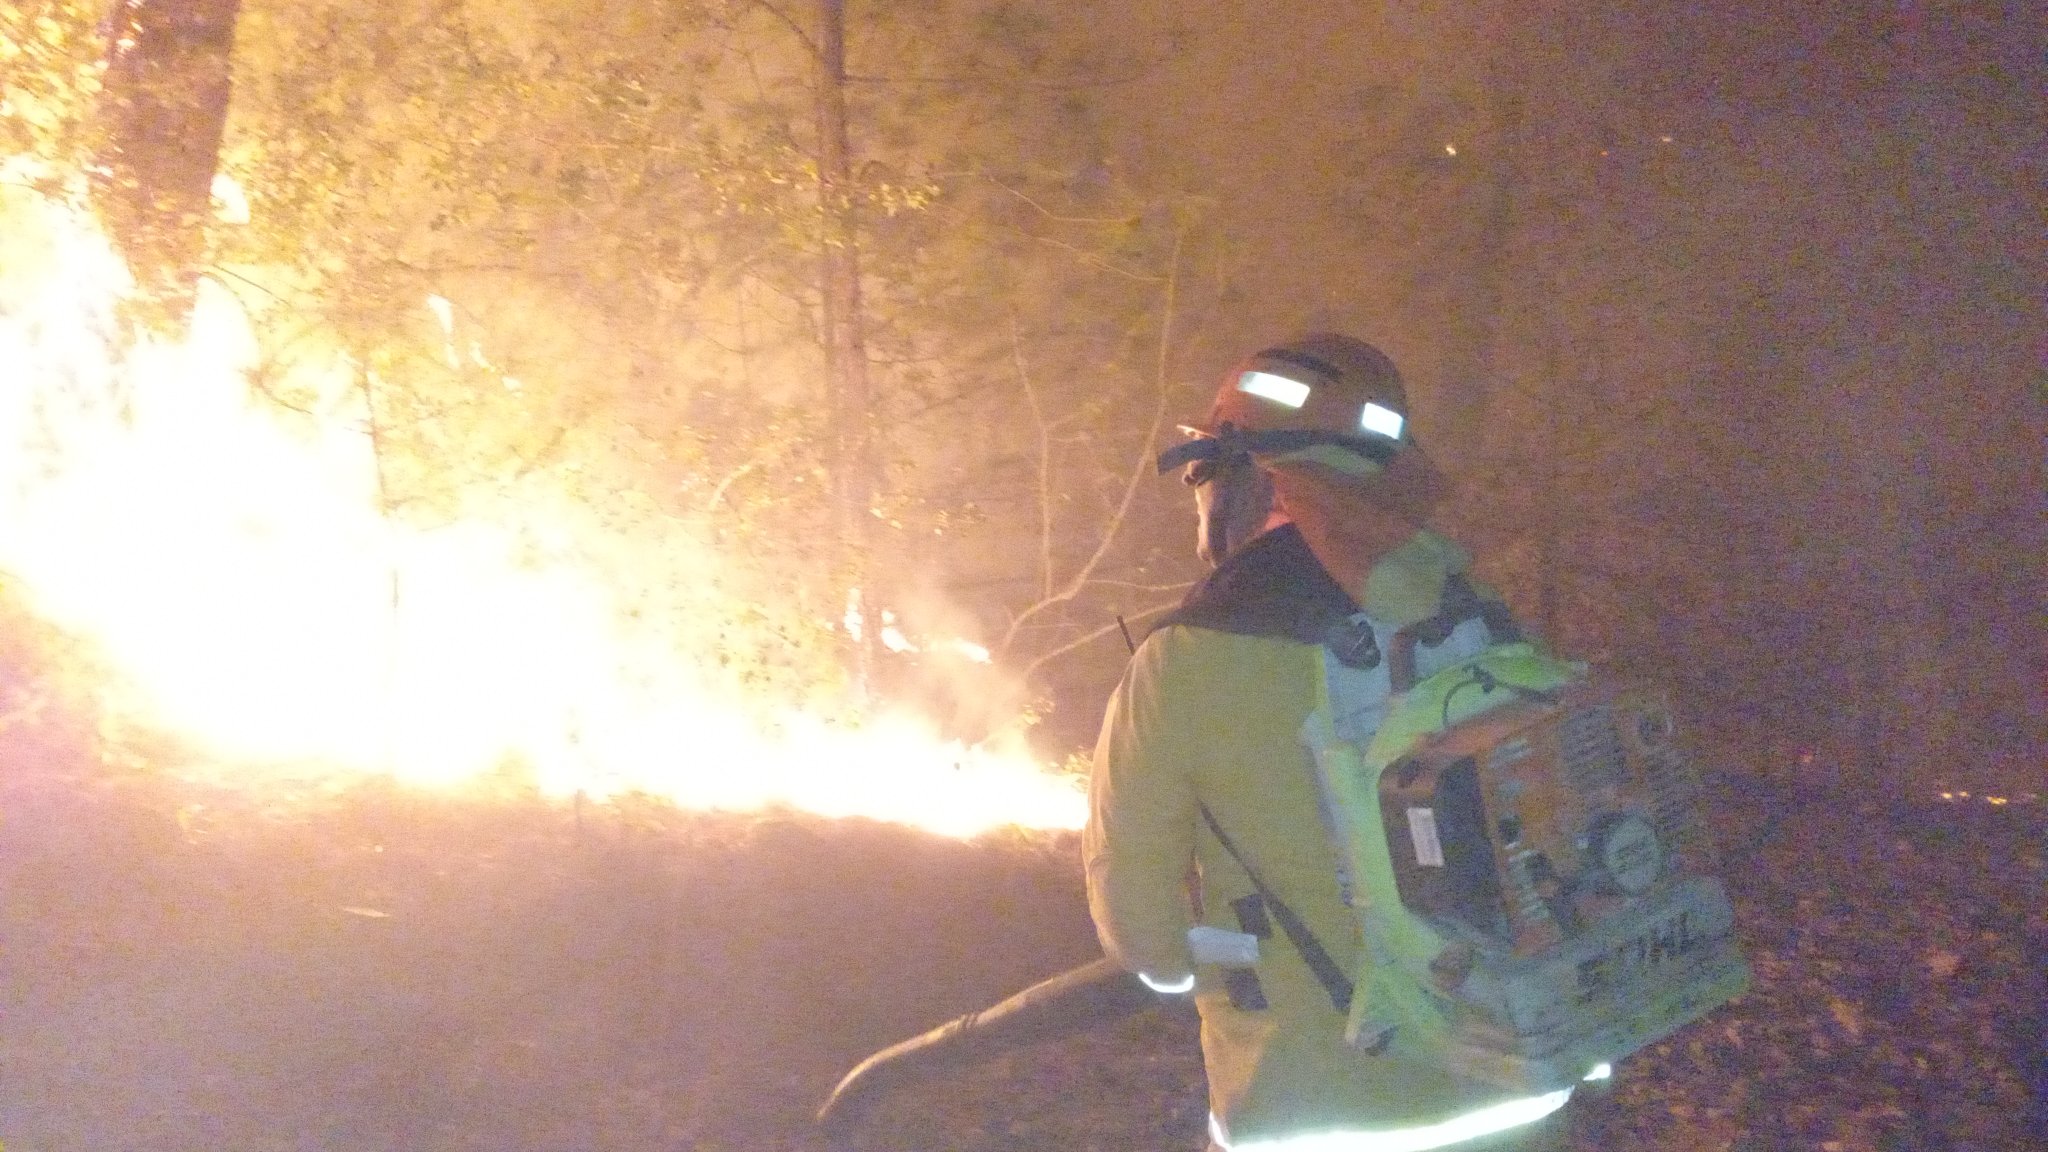 Fuera de control incendio en la Sierra de Santiago, Nuevo León; avanza sobre Puerto Genovevo